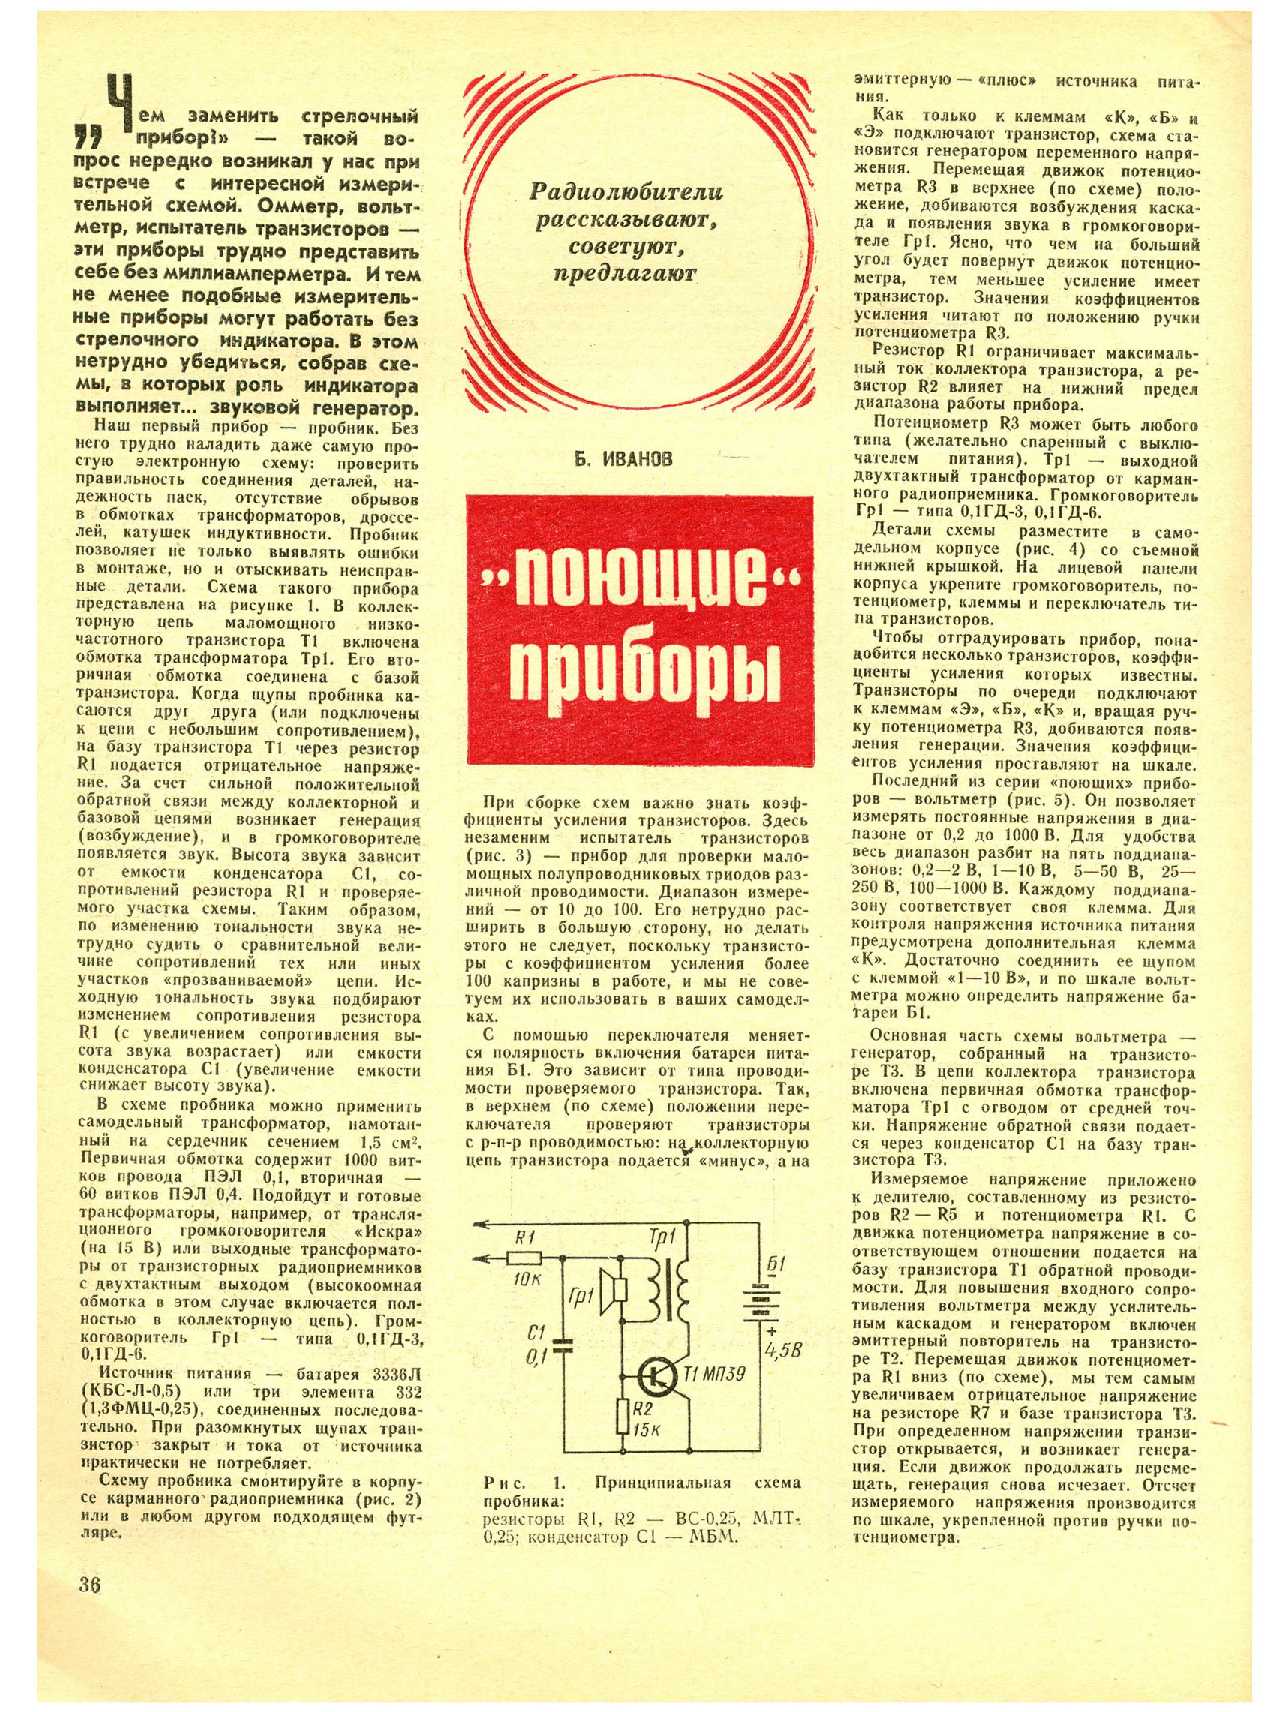 МК 7, 1974, 36 c.